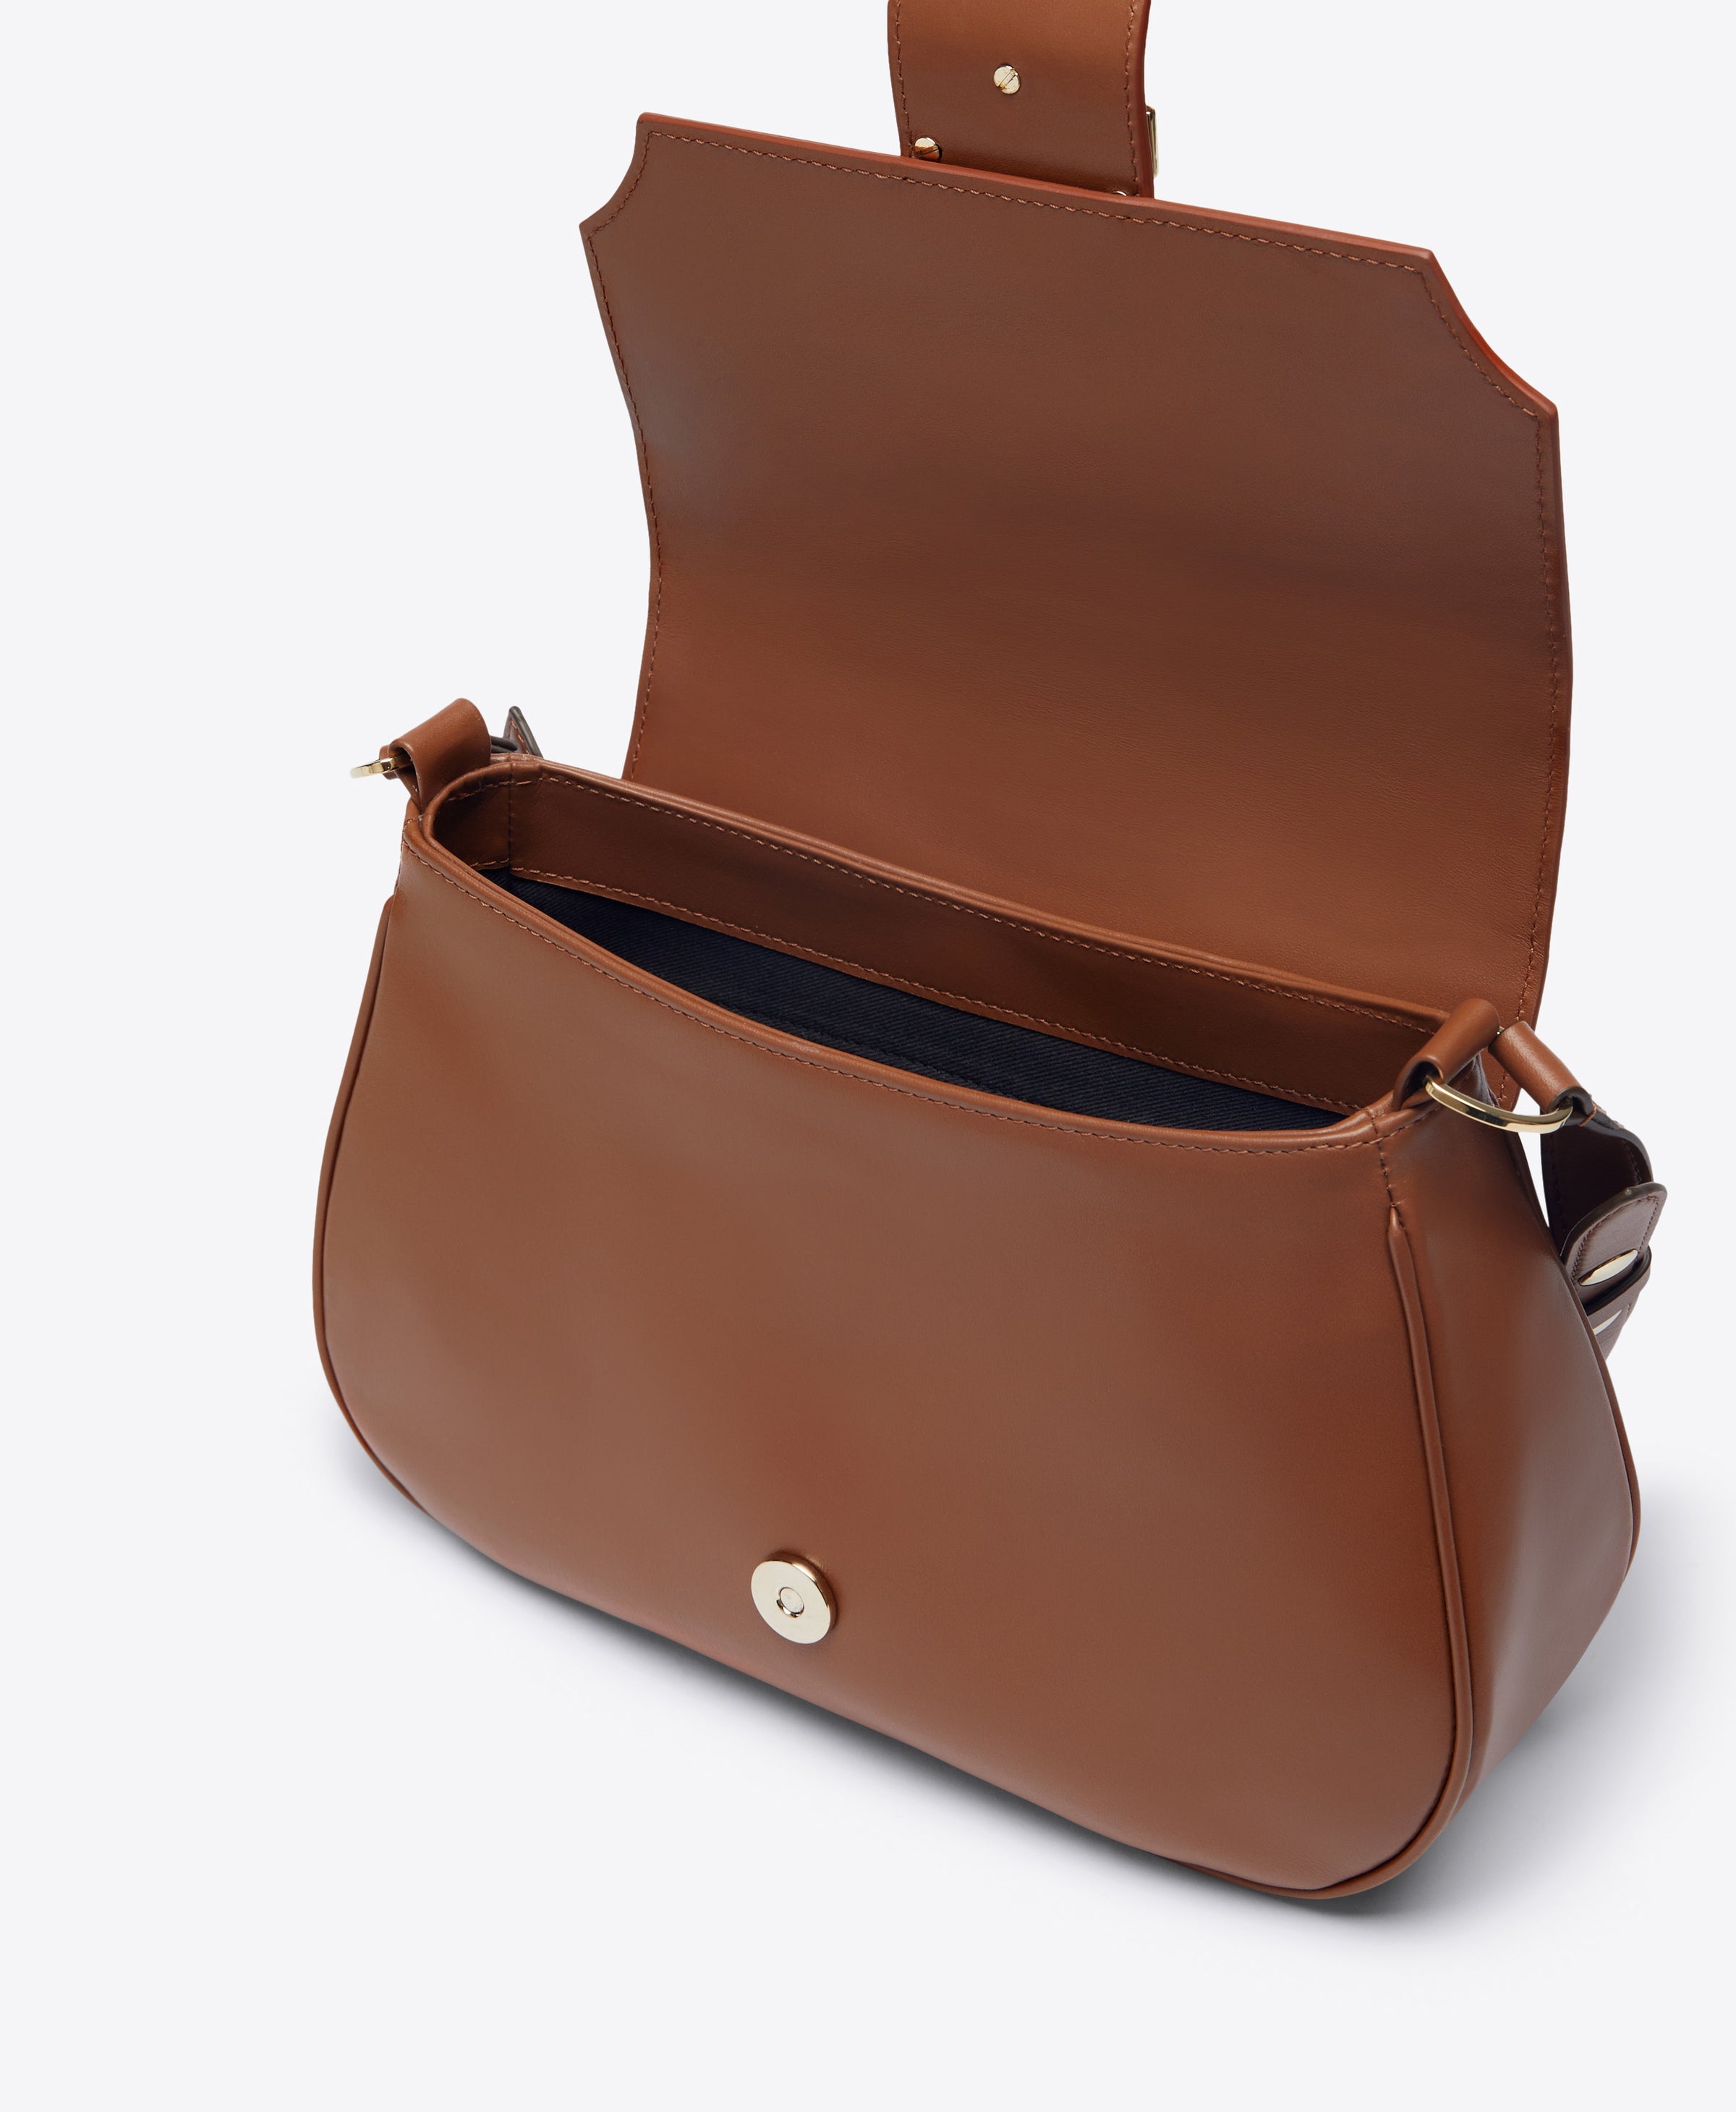 Leather Brown Calf Leather Bag Bag